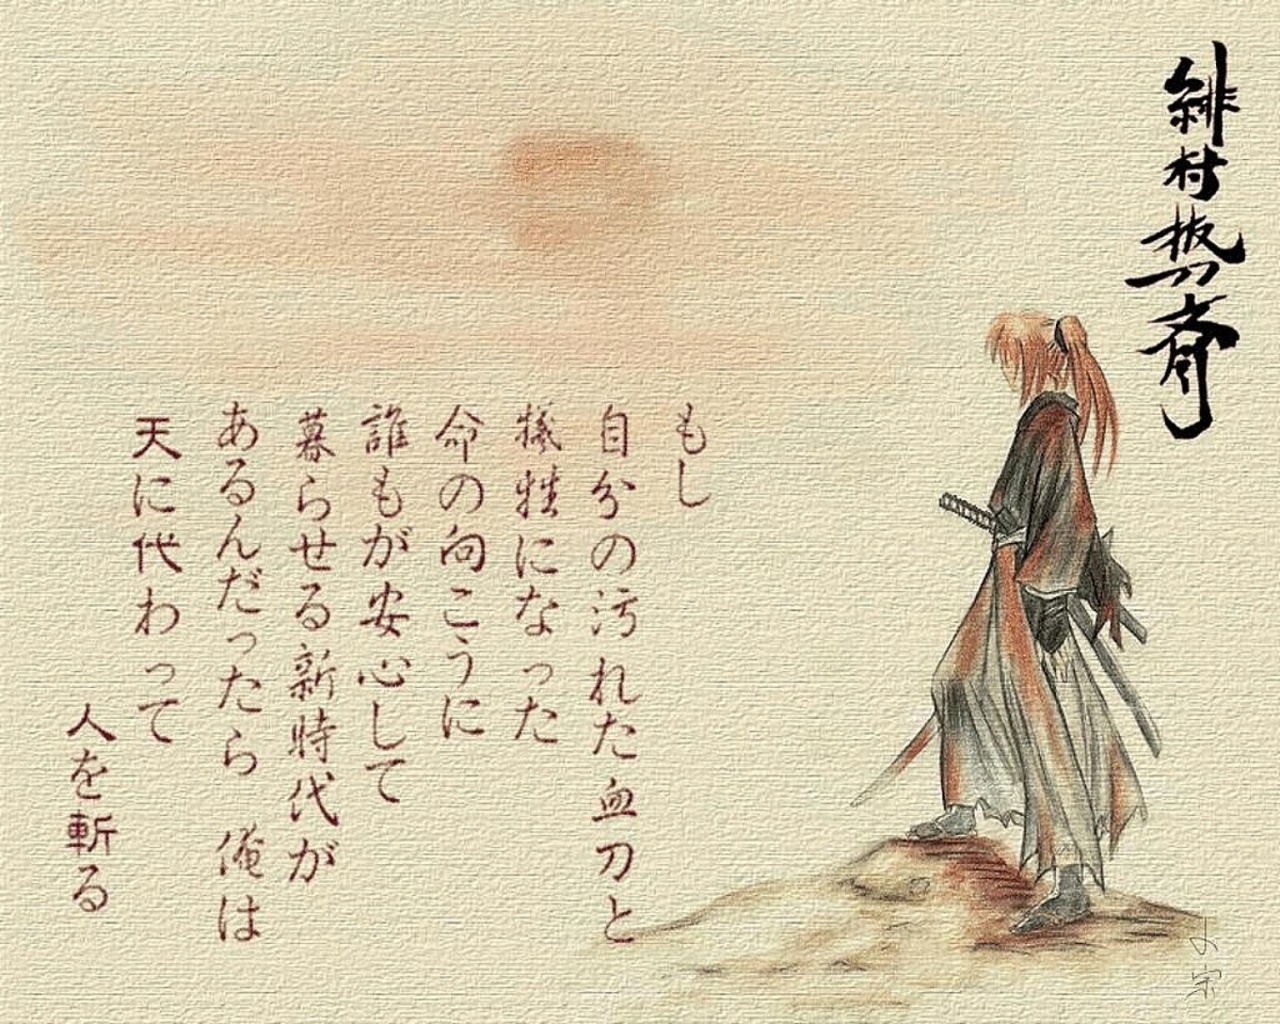 Kenshin Himura - Rurouni Kenshin , HD Wallpaper & Backgrounds